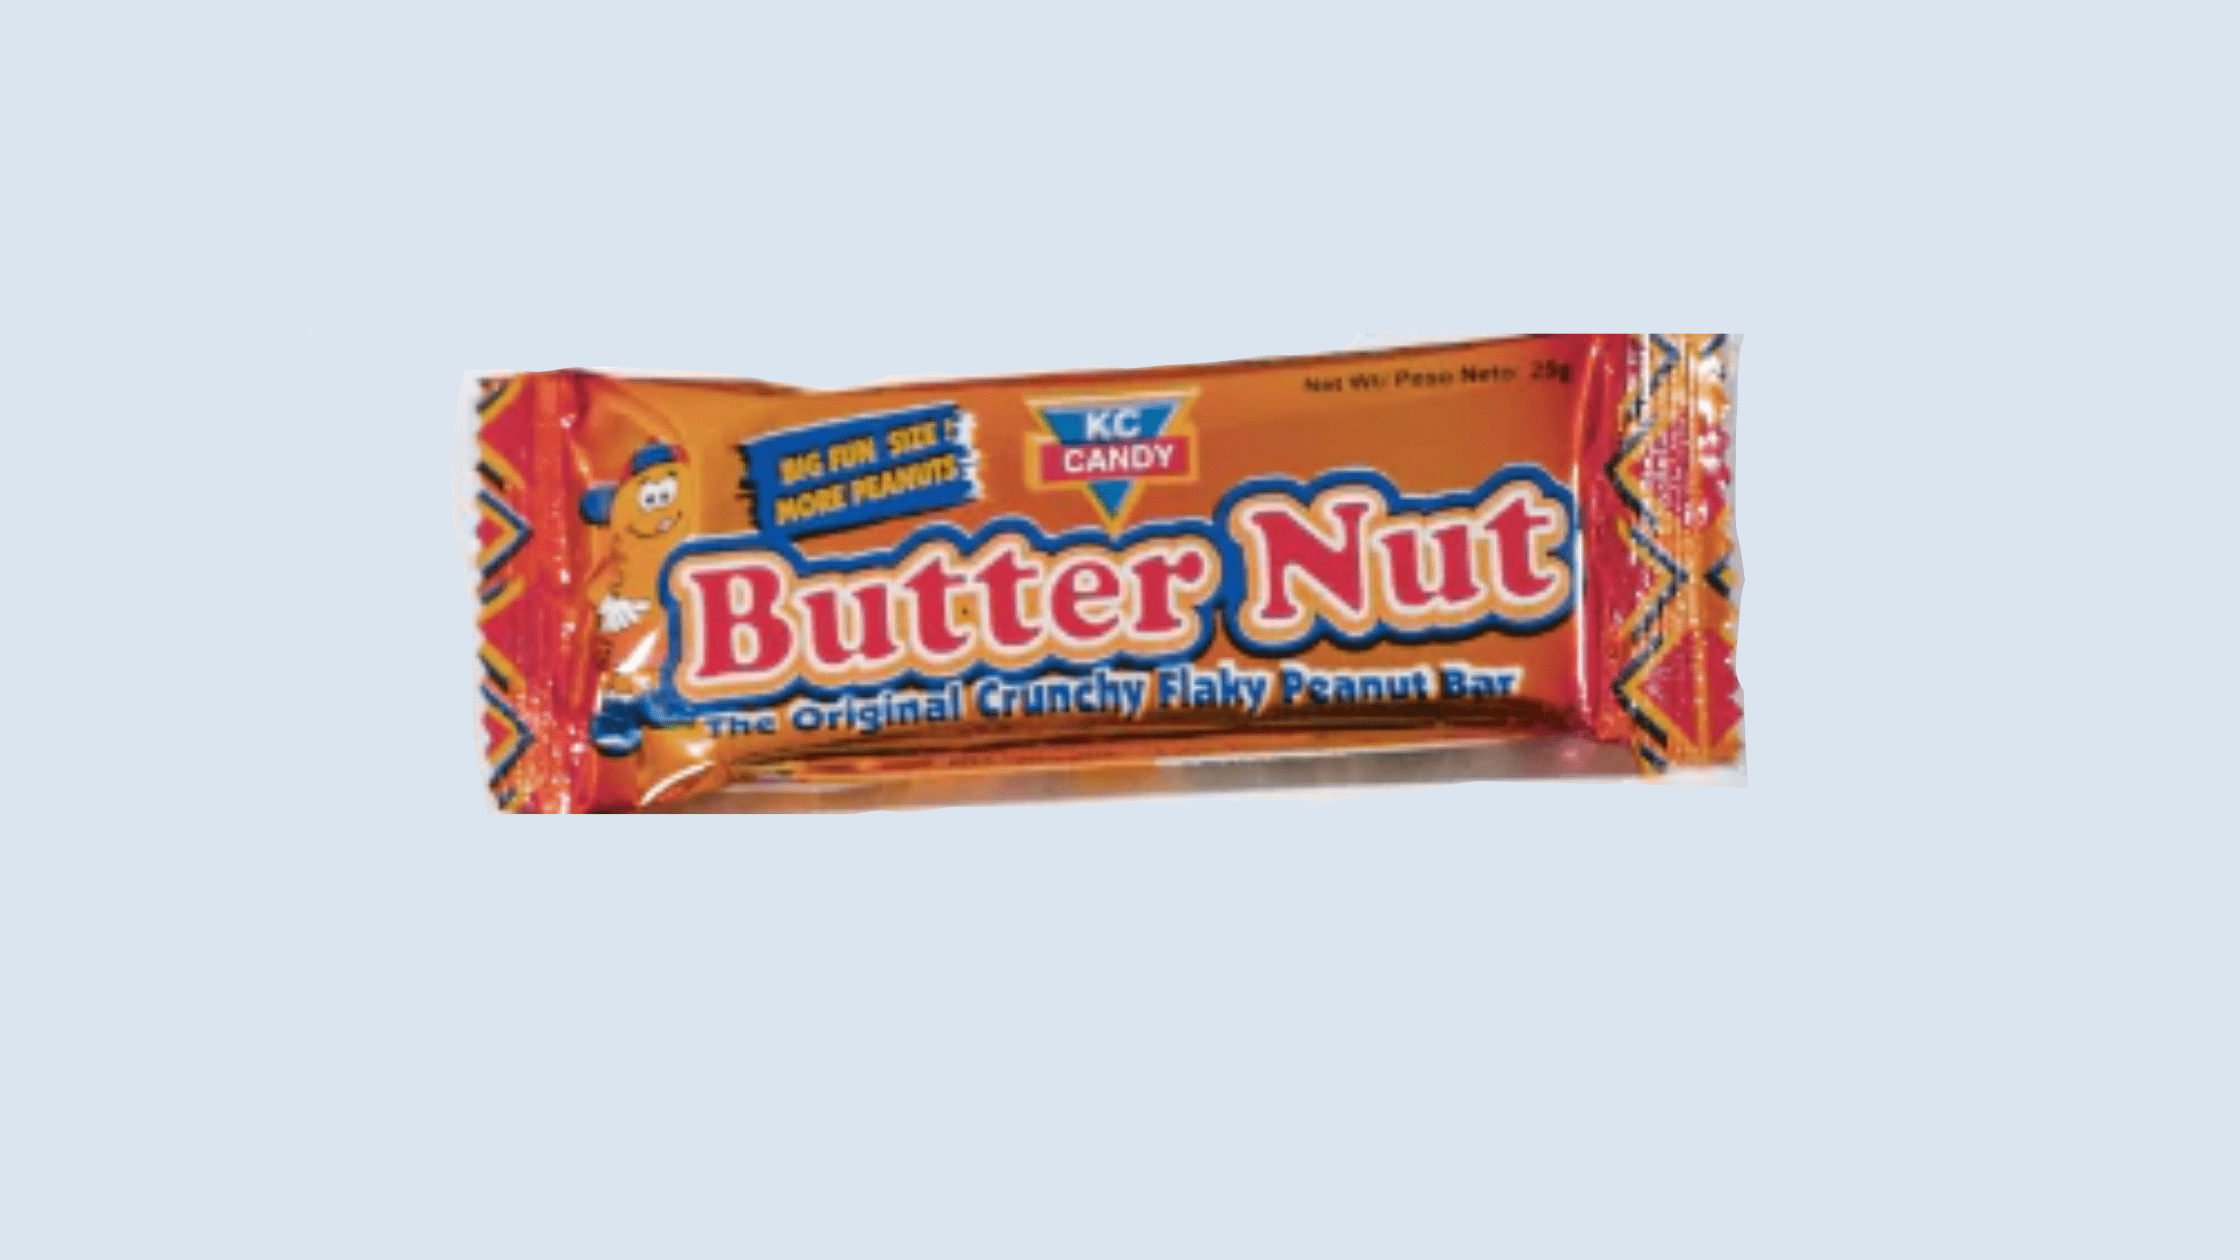 Butternut Candy Bar